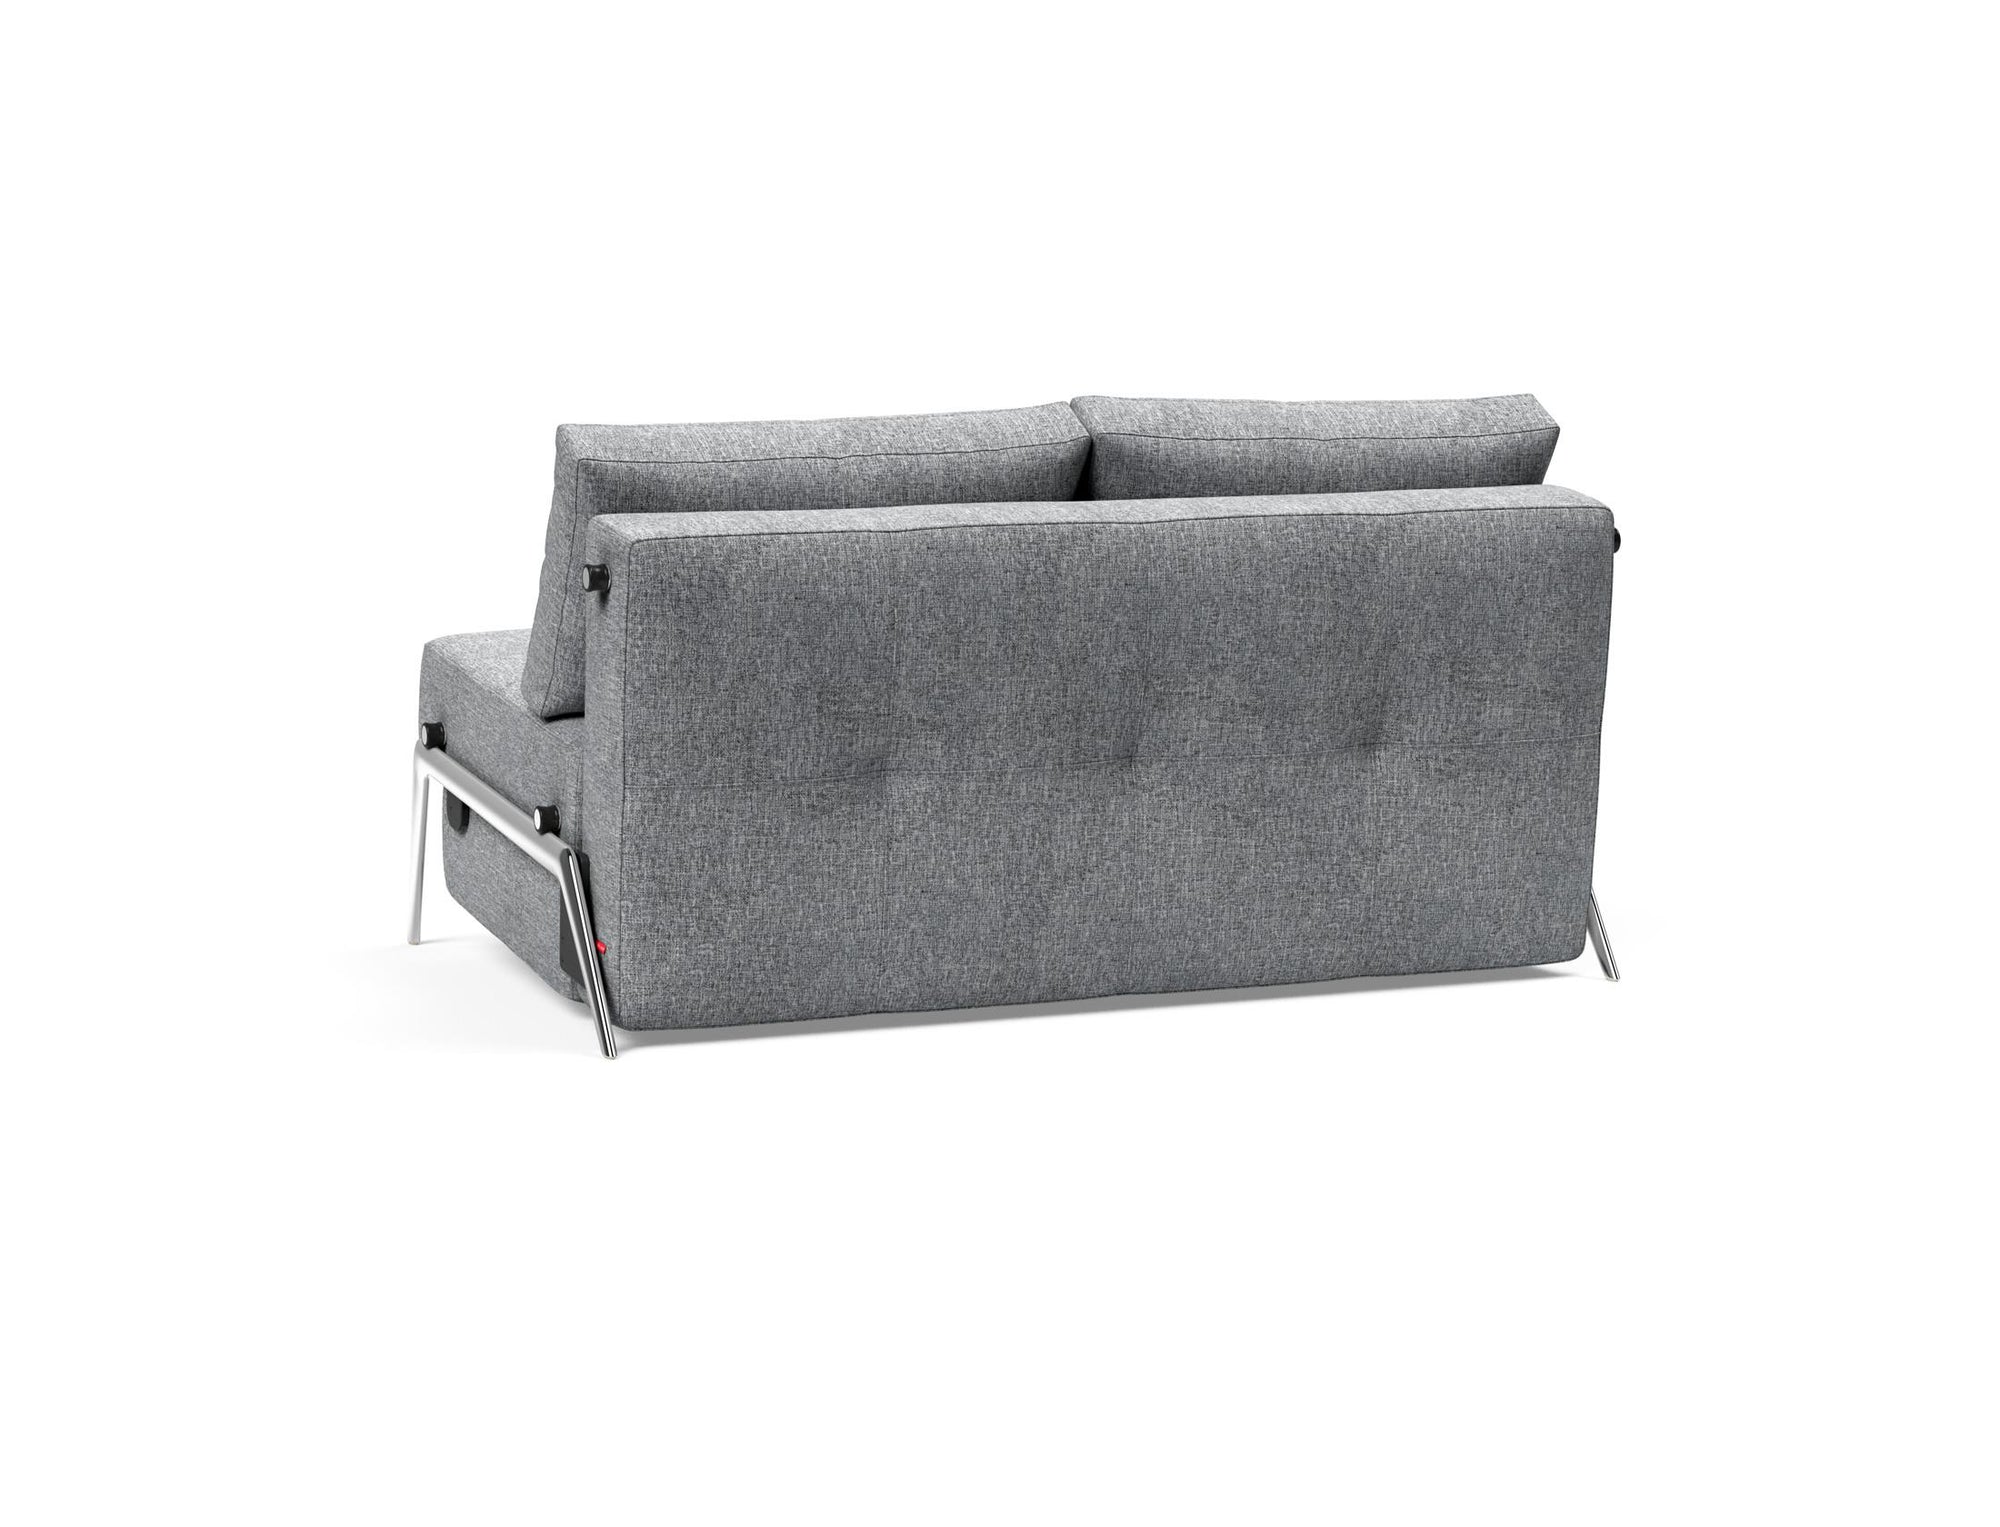 CUBED Aluminium Sofa Bed 140CM